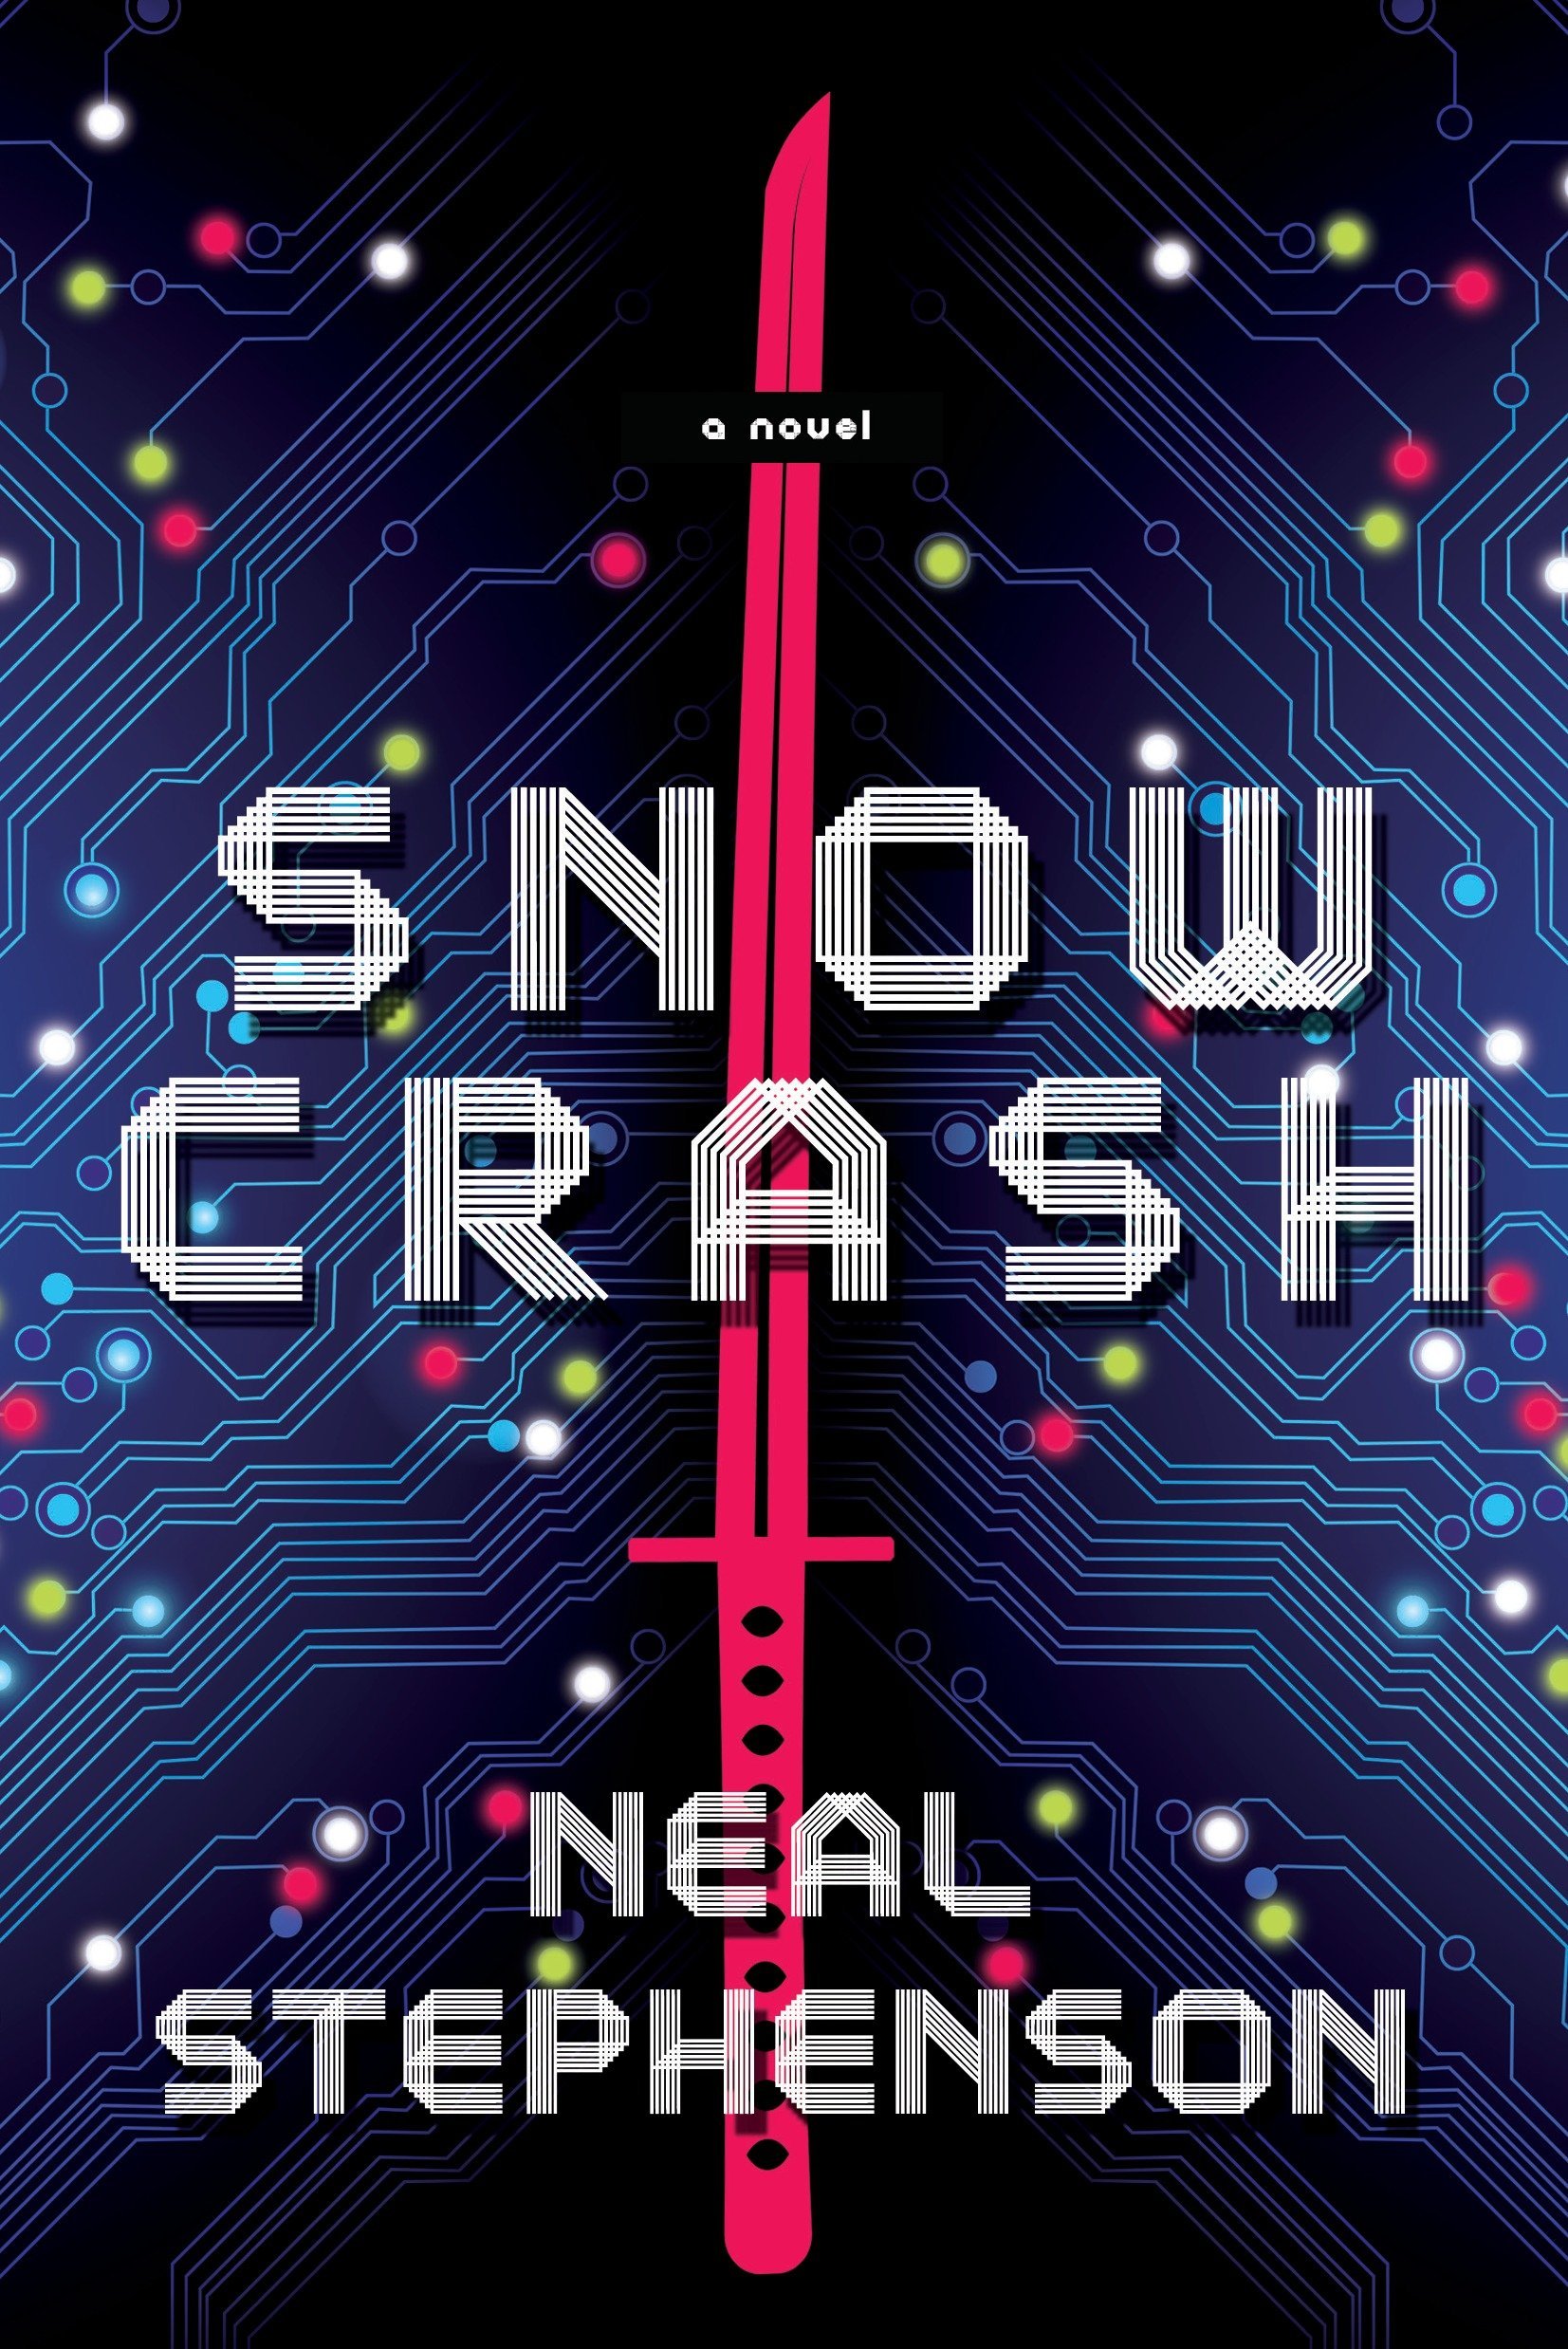 Snow Crash: A Novel